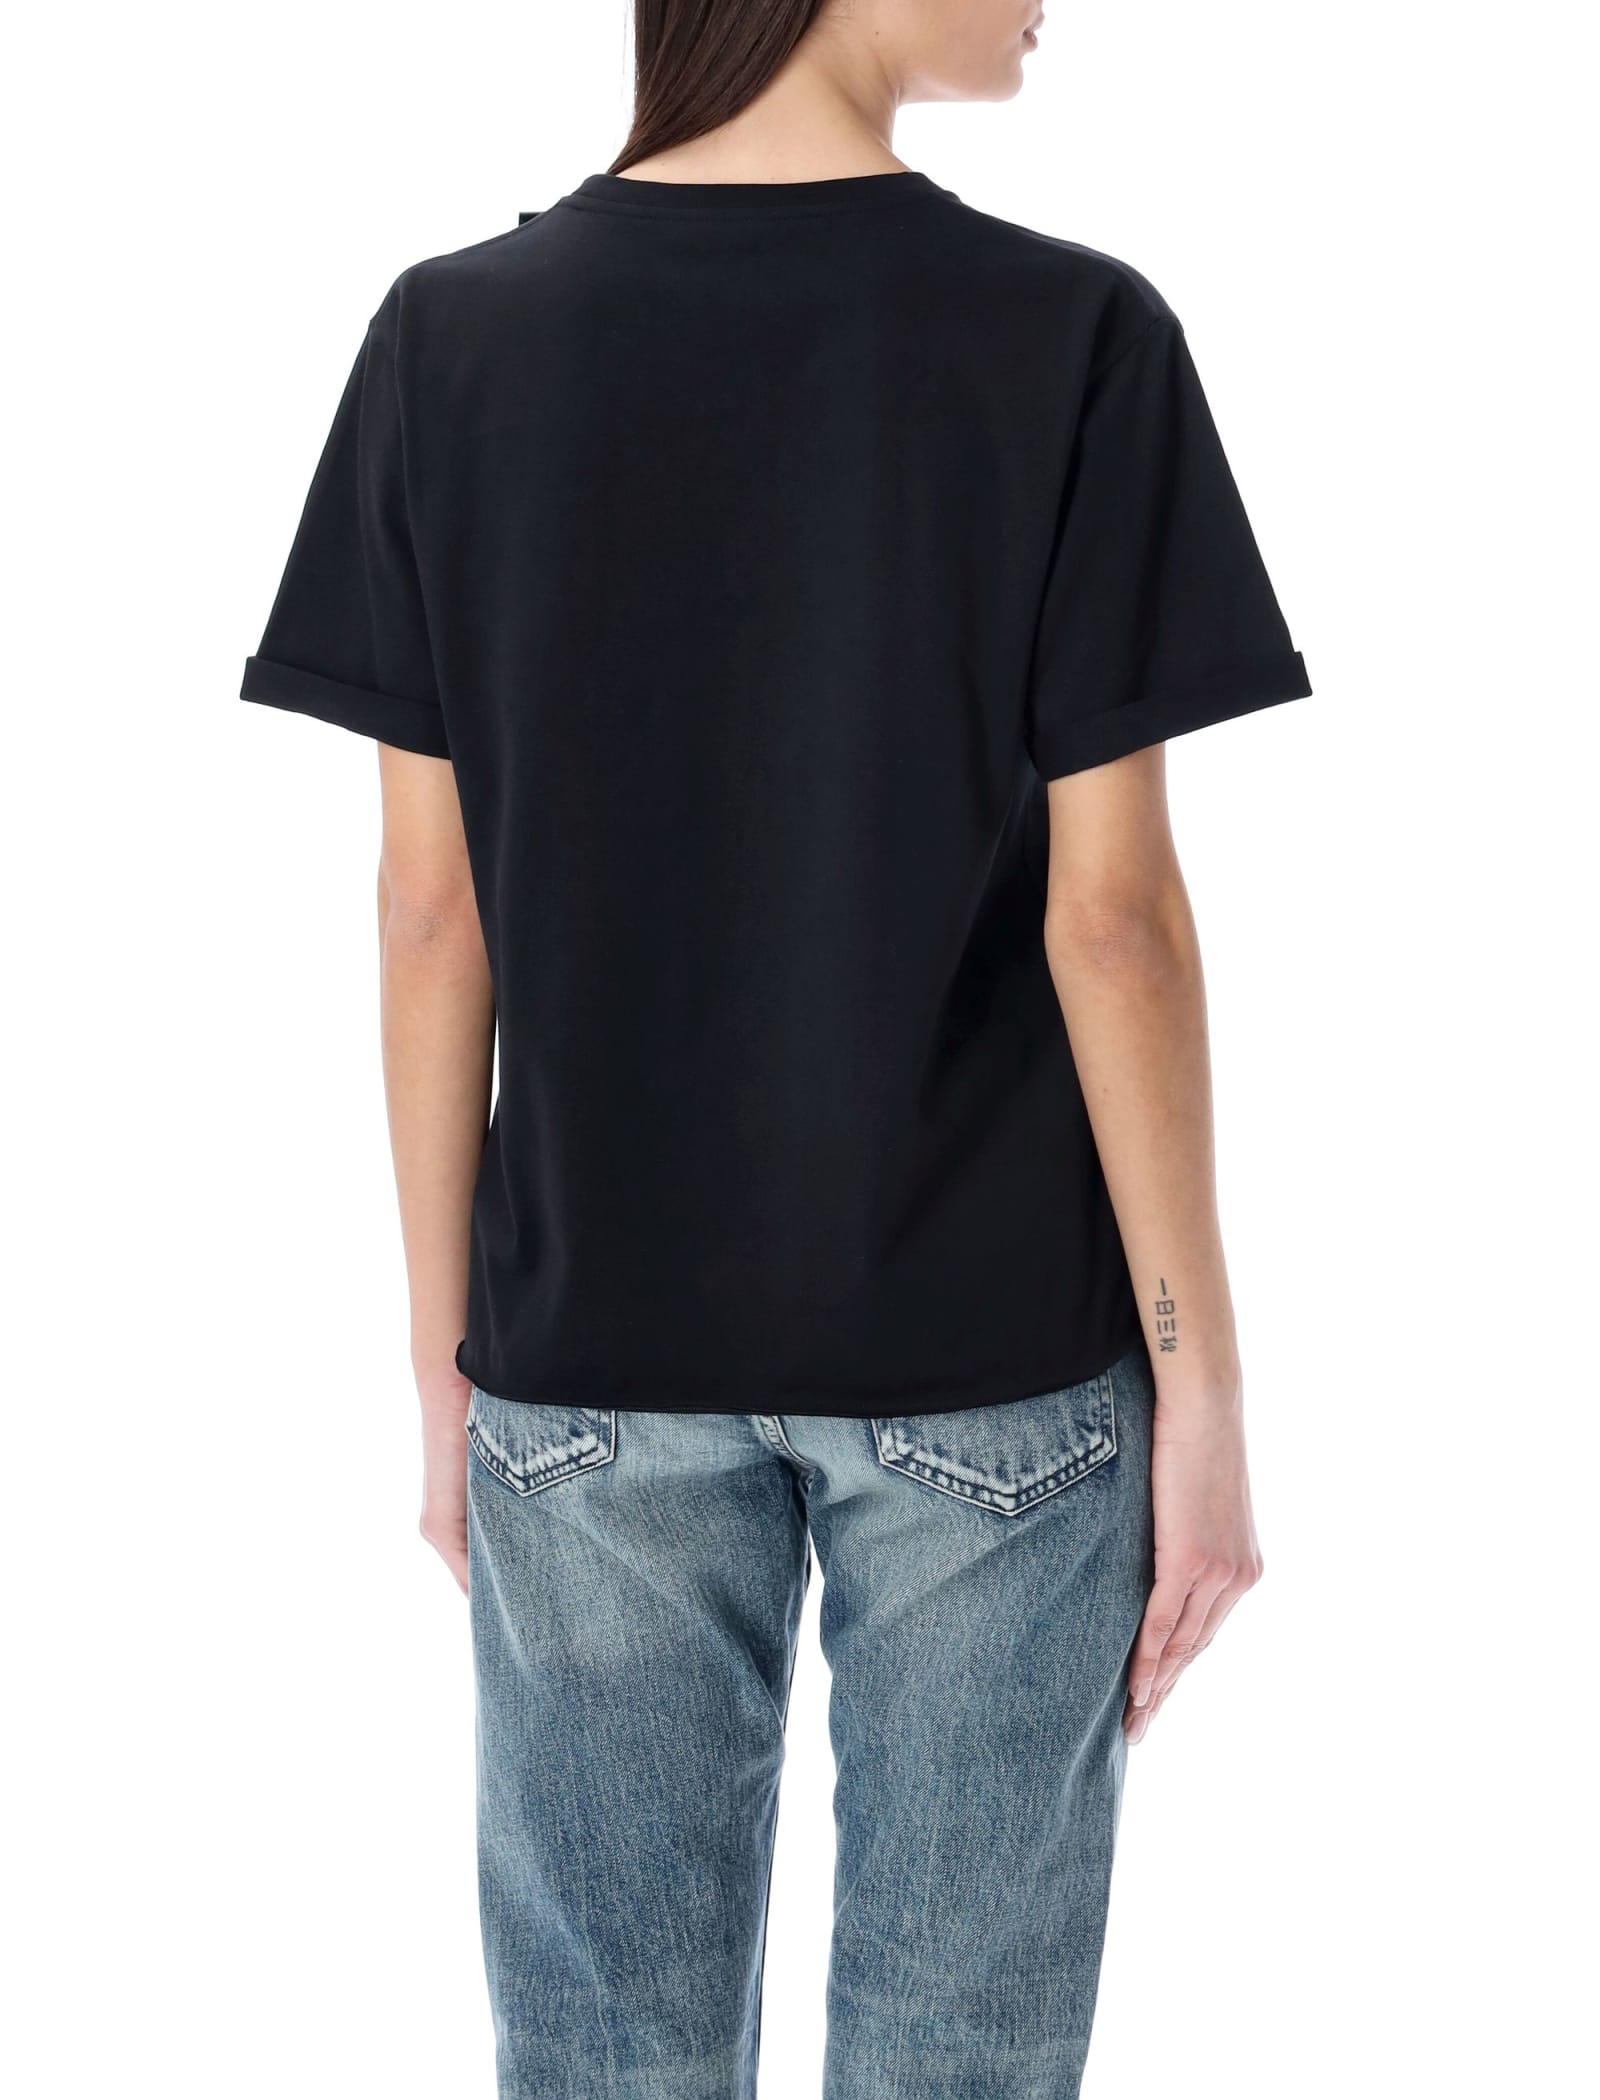 Shop Saint Laurent Classic Logo T-shirt In Black